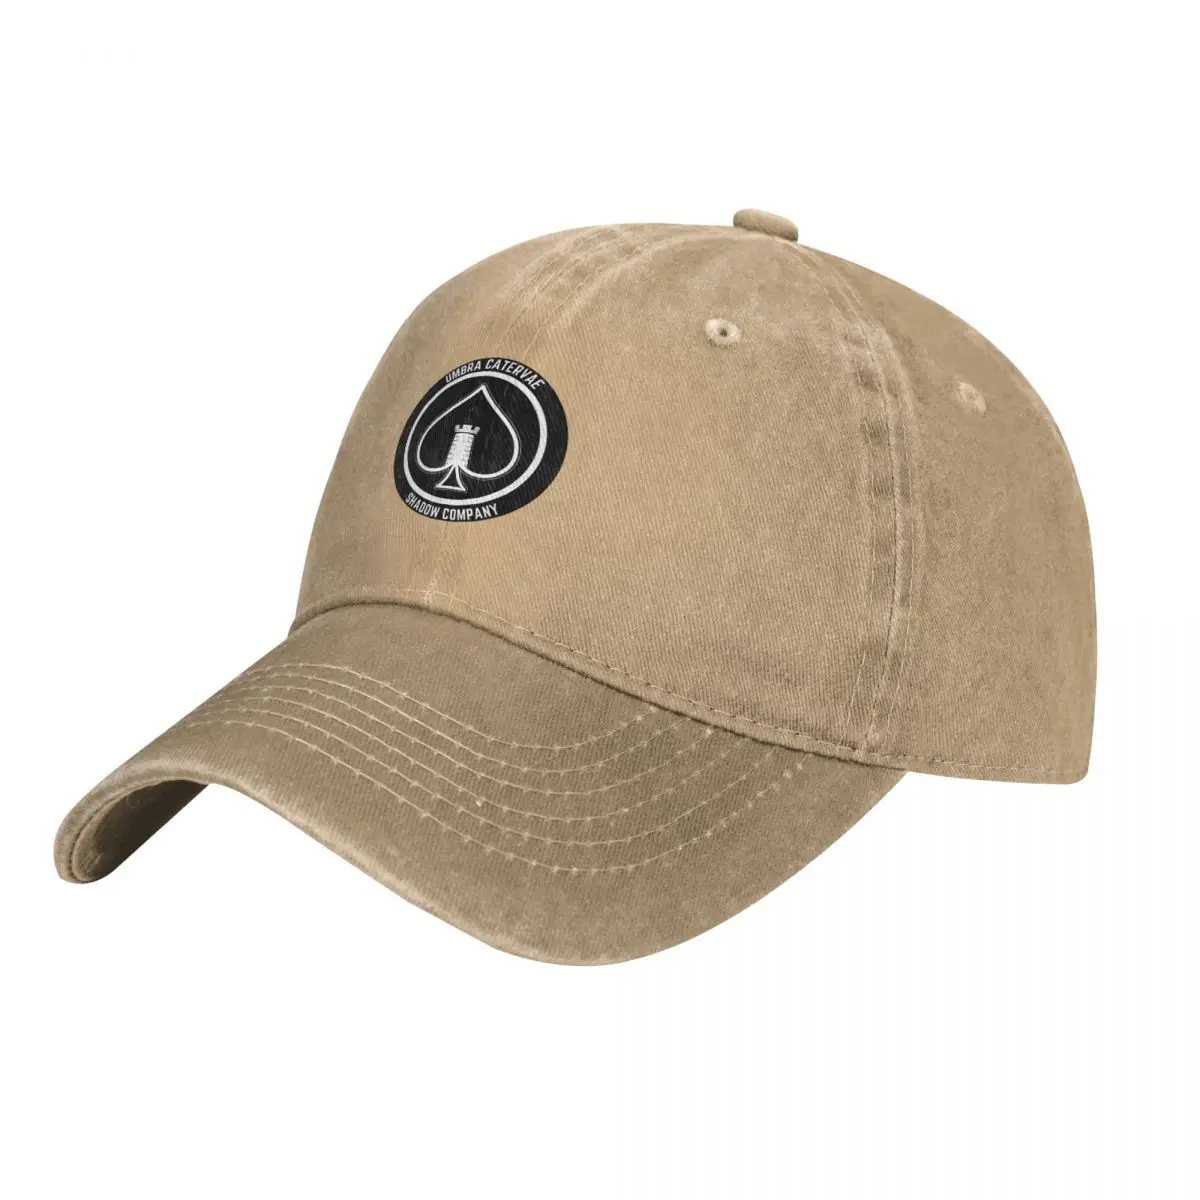 Shadow Company Emblem Cap Cowboy Hat bucket hat Sun cap military tactica... - £17.06 GBP